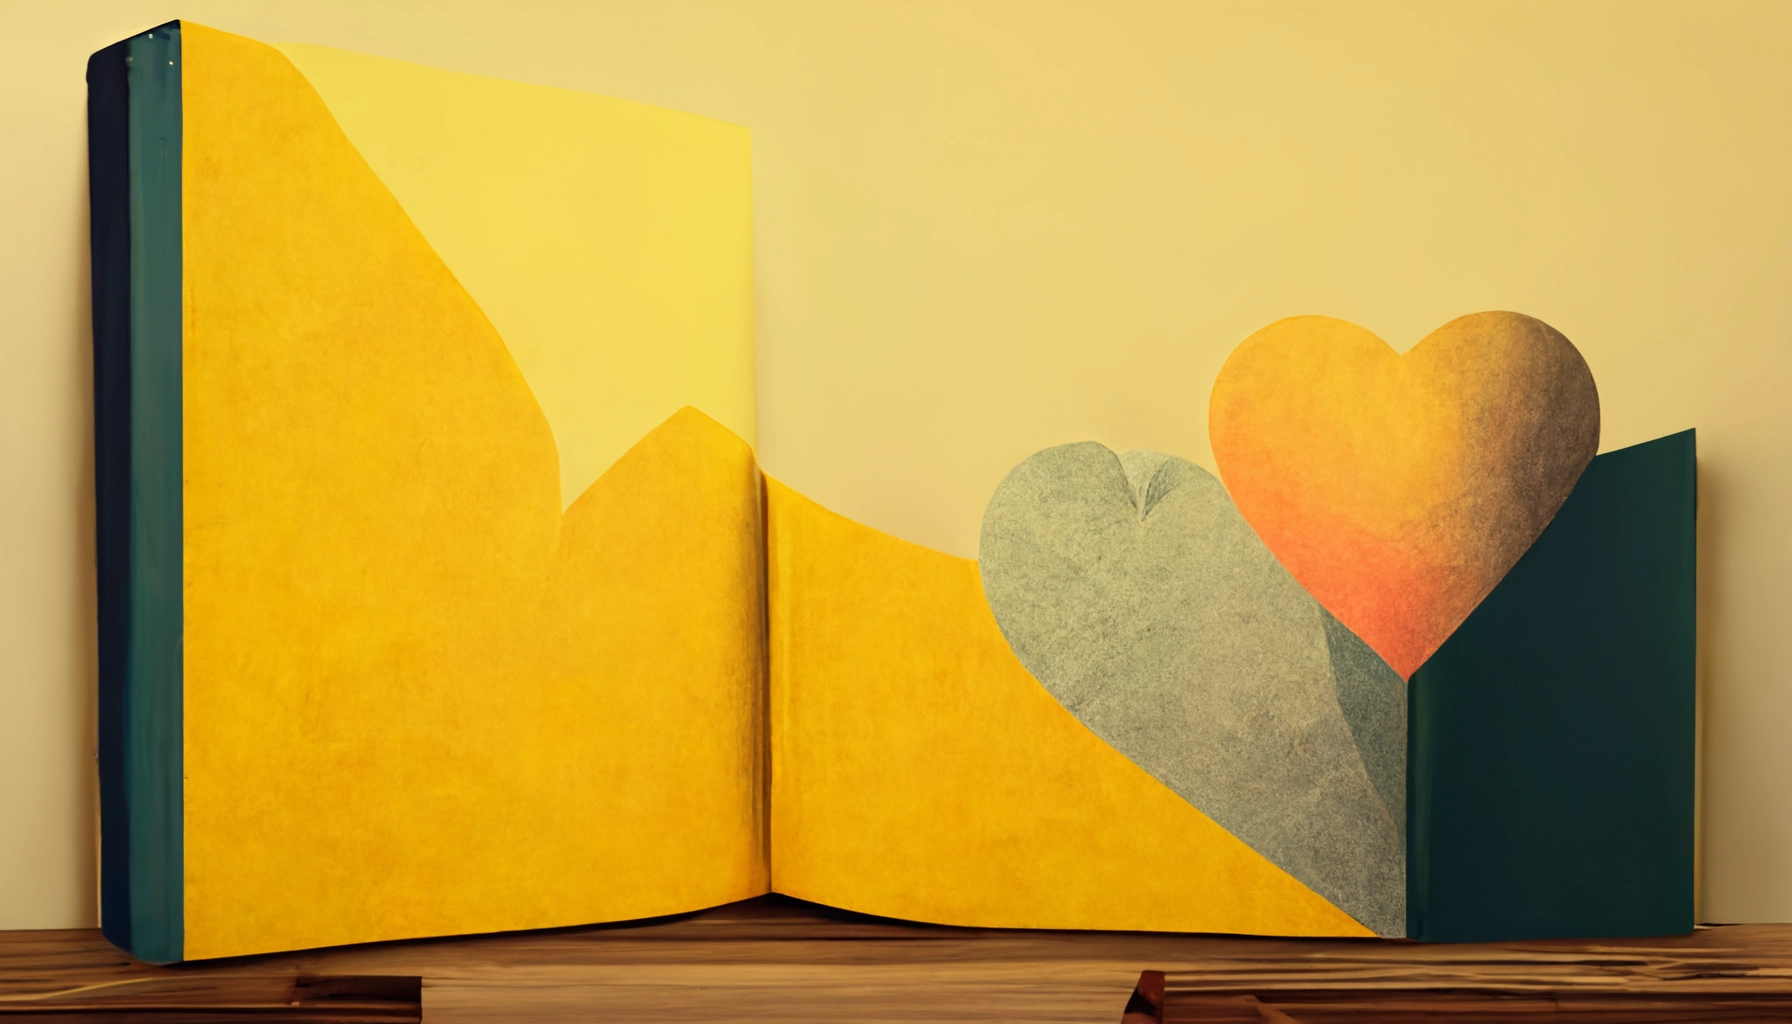 Bücher über Selbstliebe, gelbes abstraktes Buch mit gelbem Herz